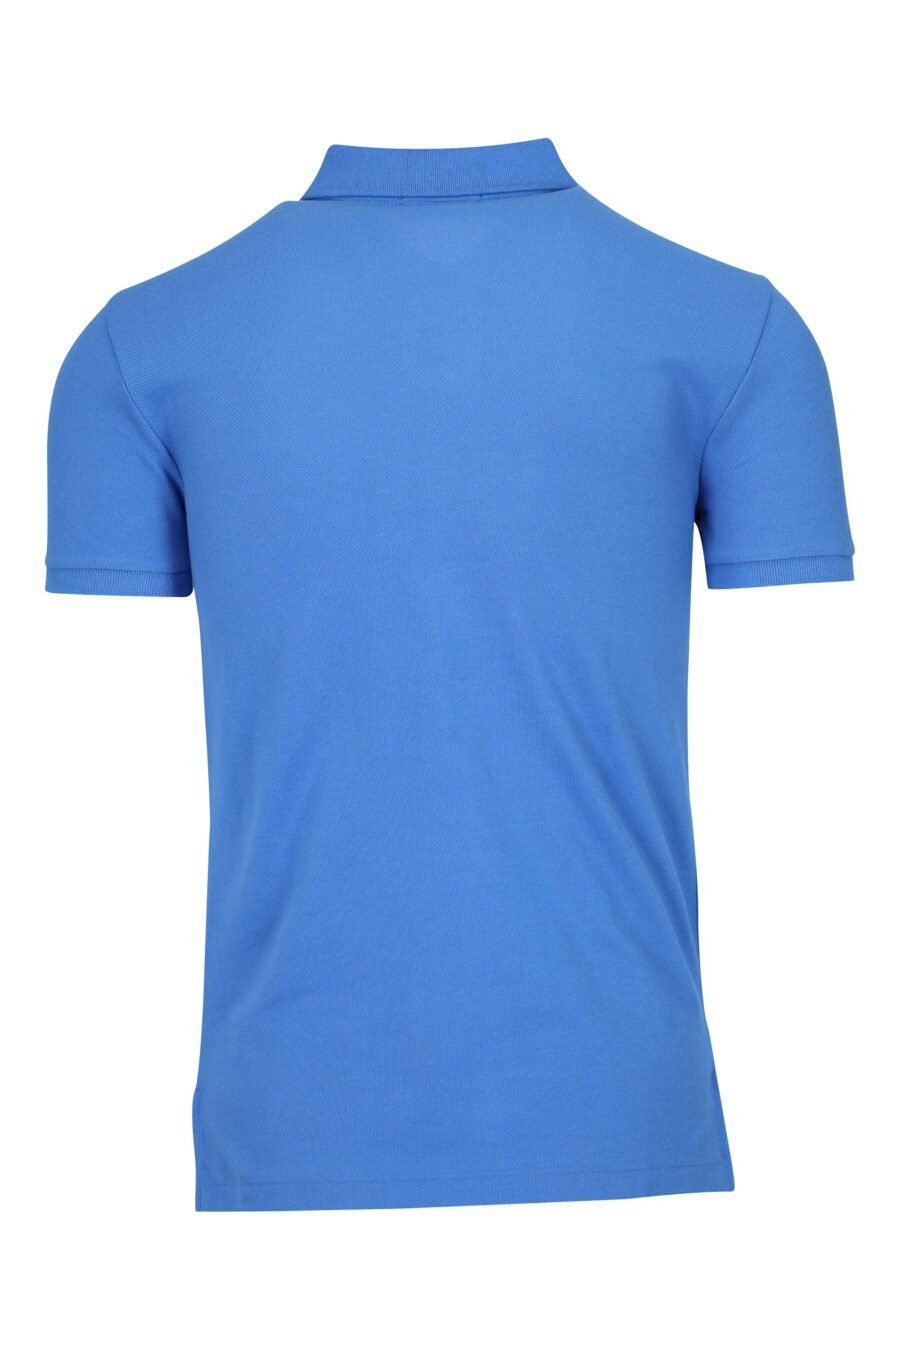 T-shirt bleu et rose avec mini-logo "polo" - 3616536089159 1